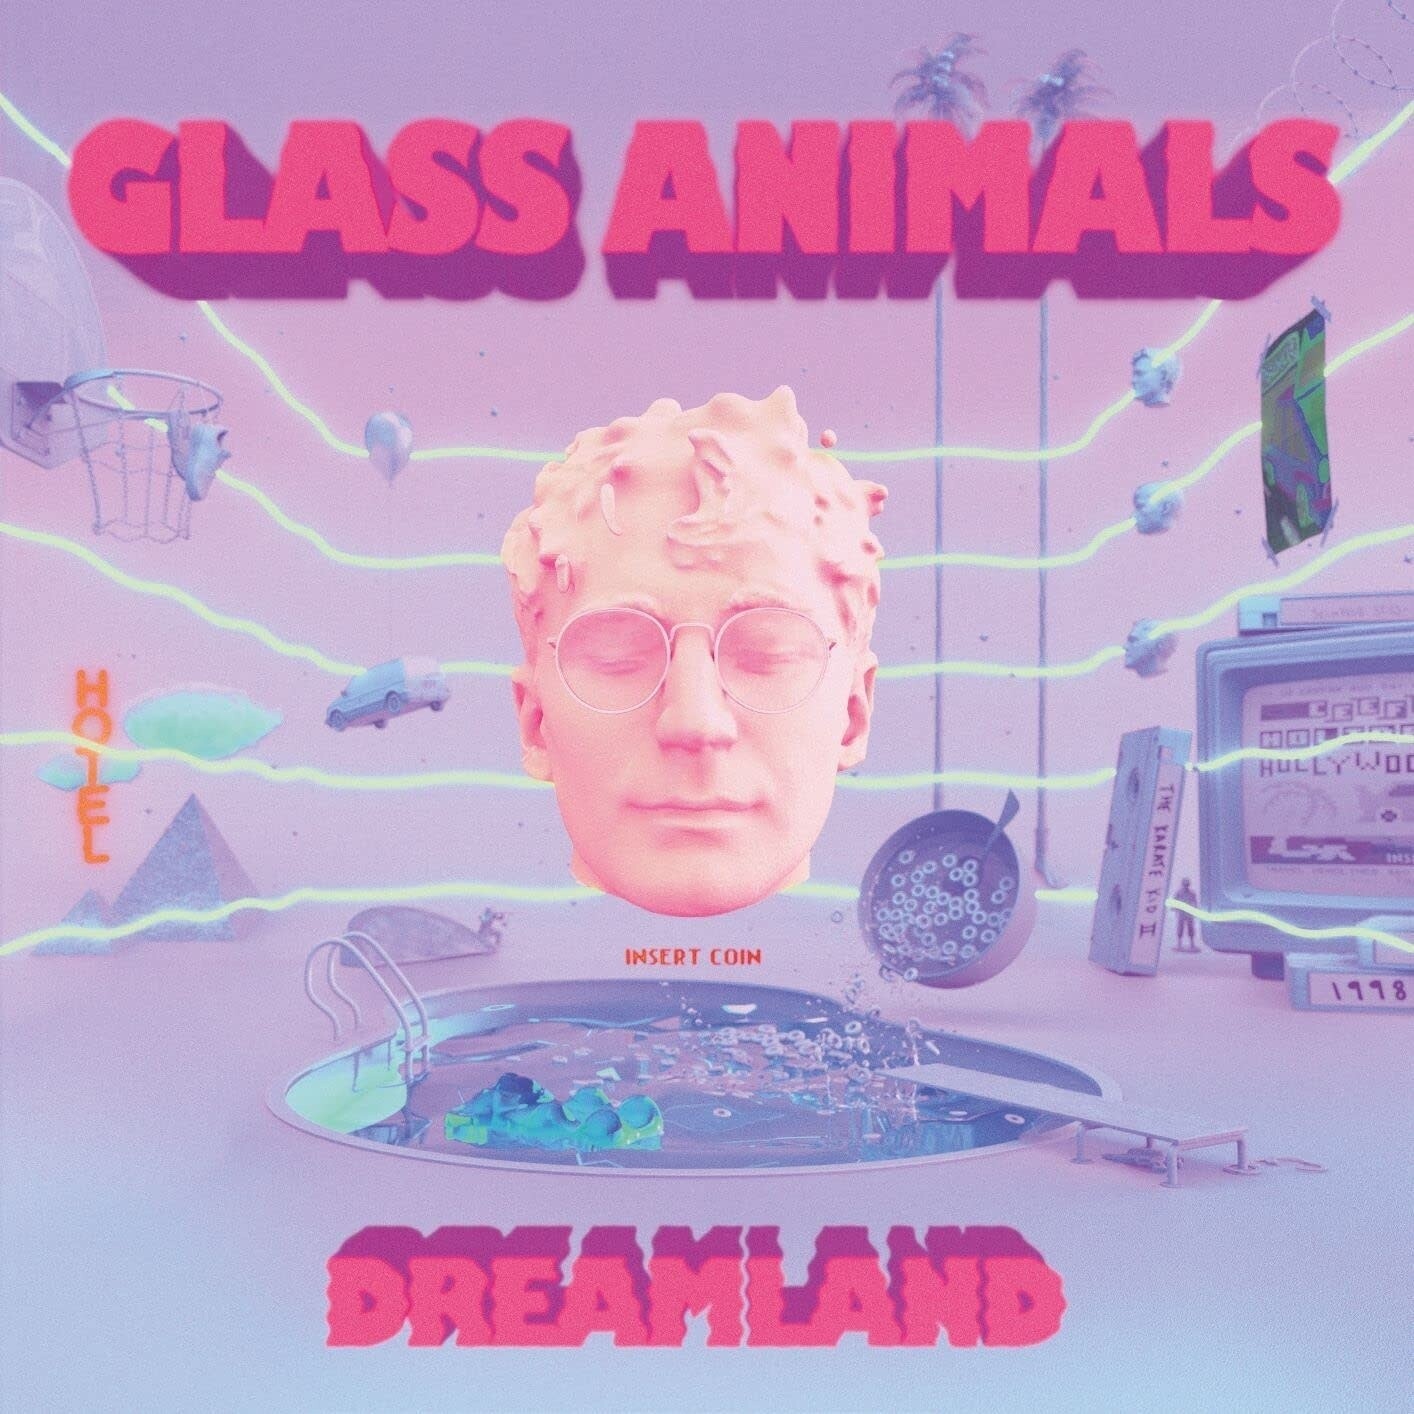 Glass Animals – Dreamland LP blue 180 gram vinyl